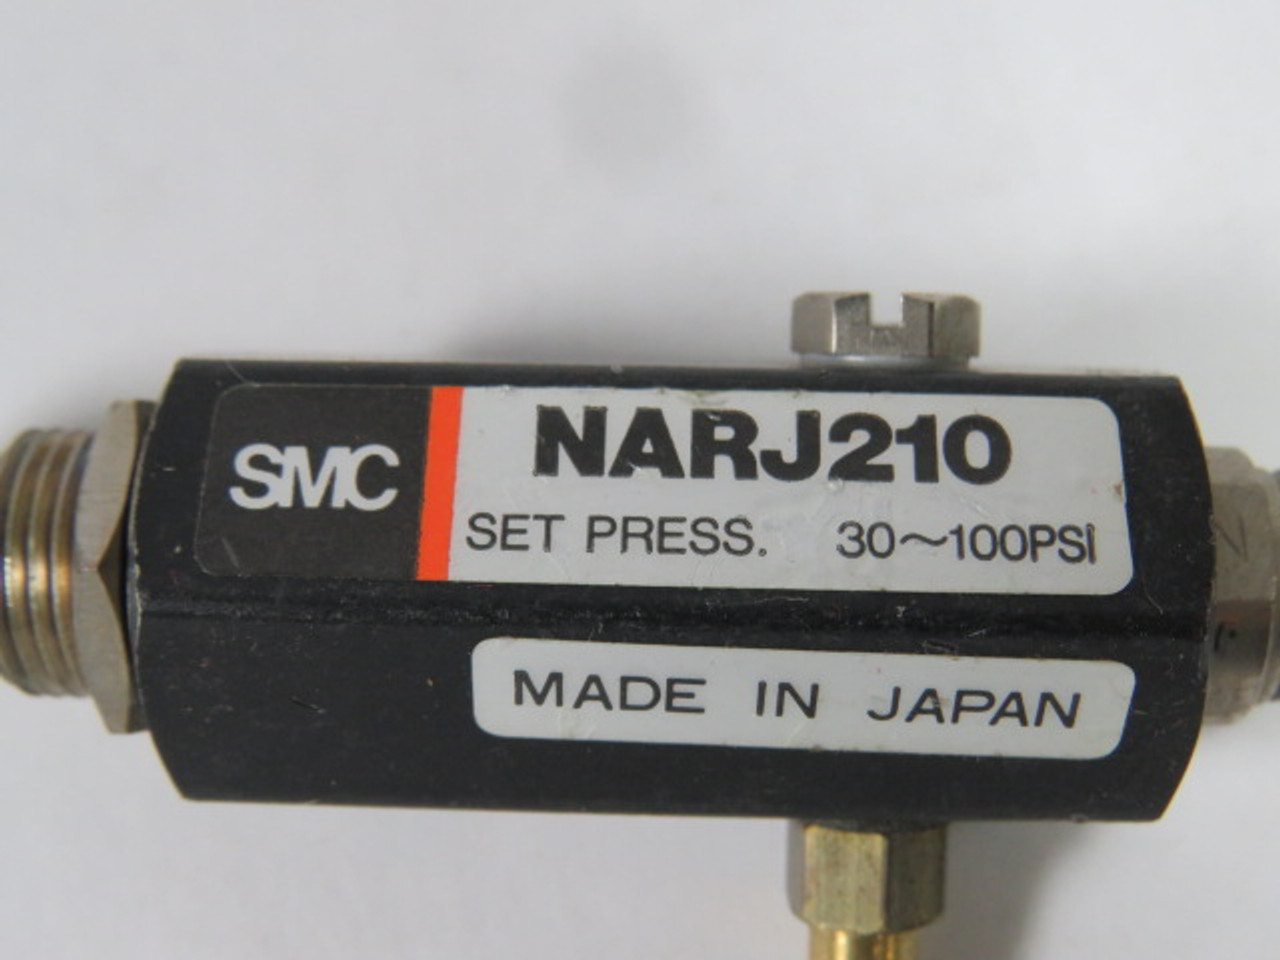 SMC NARJ210 Miniature Regulator 30-100PSI USED